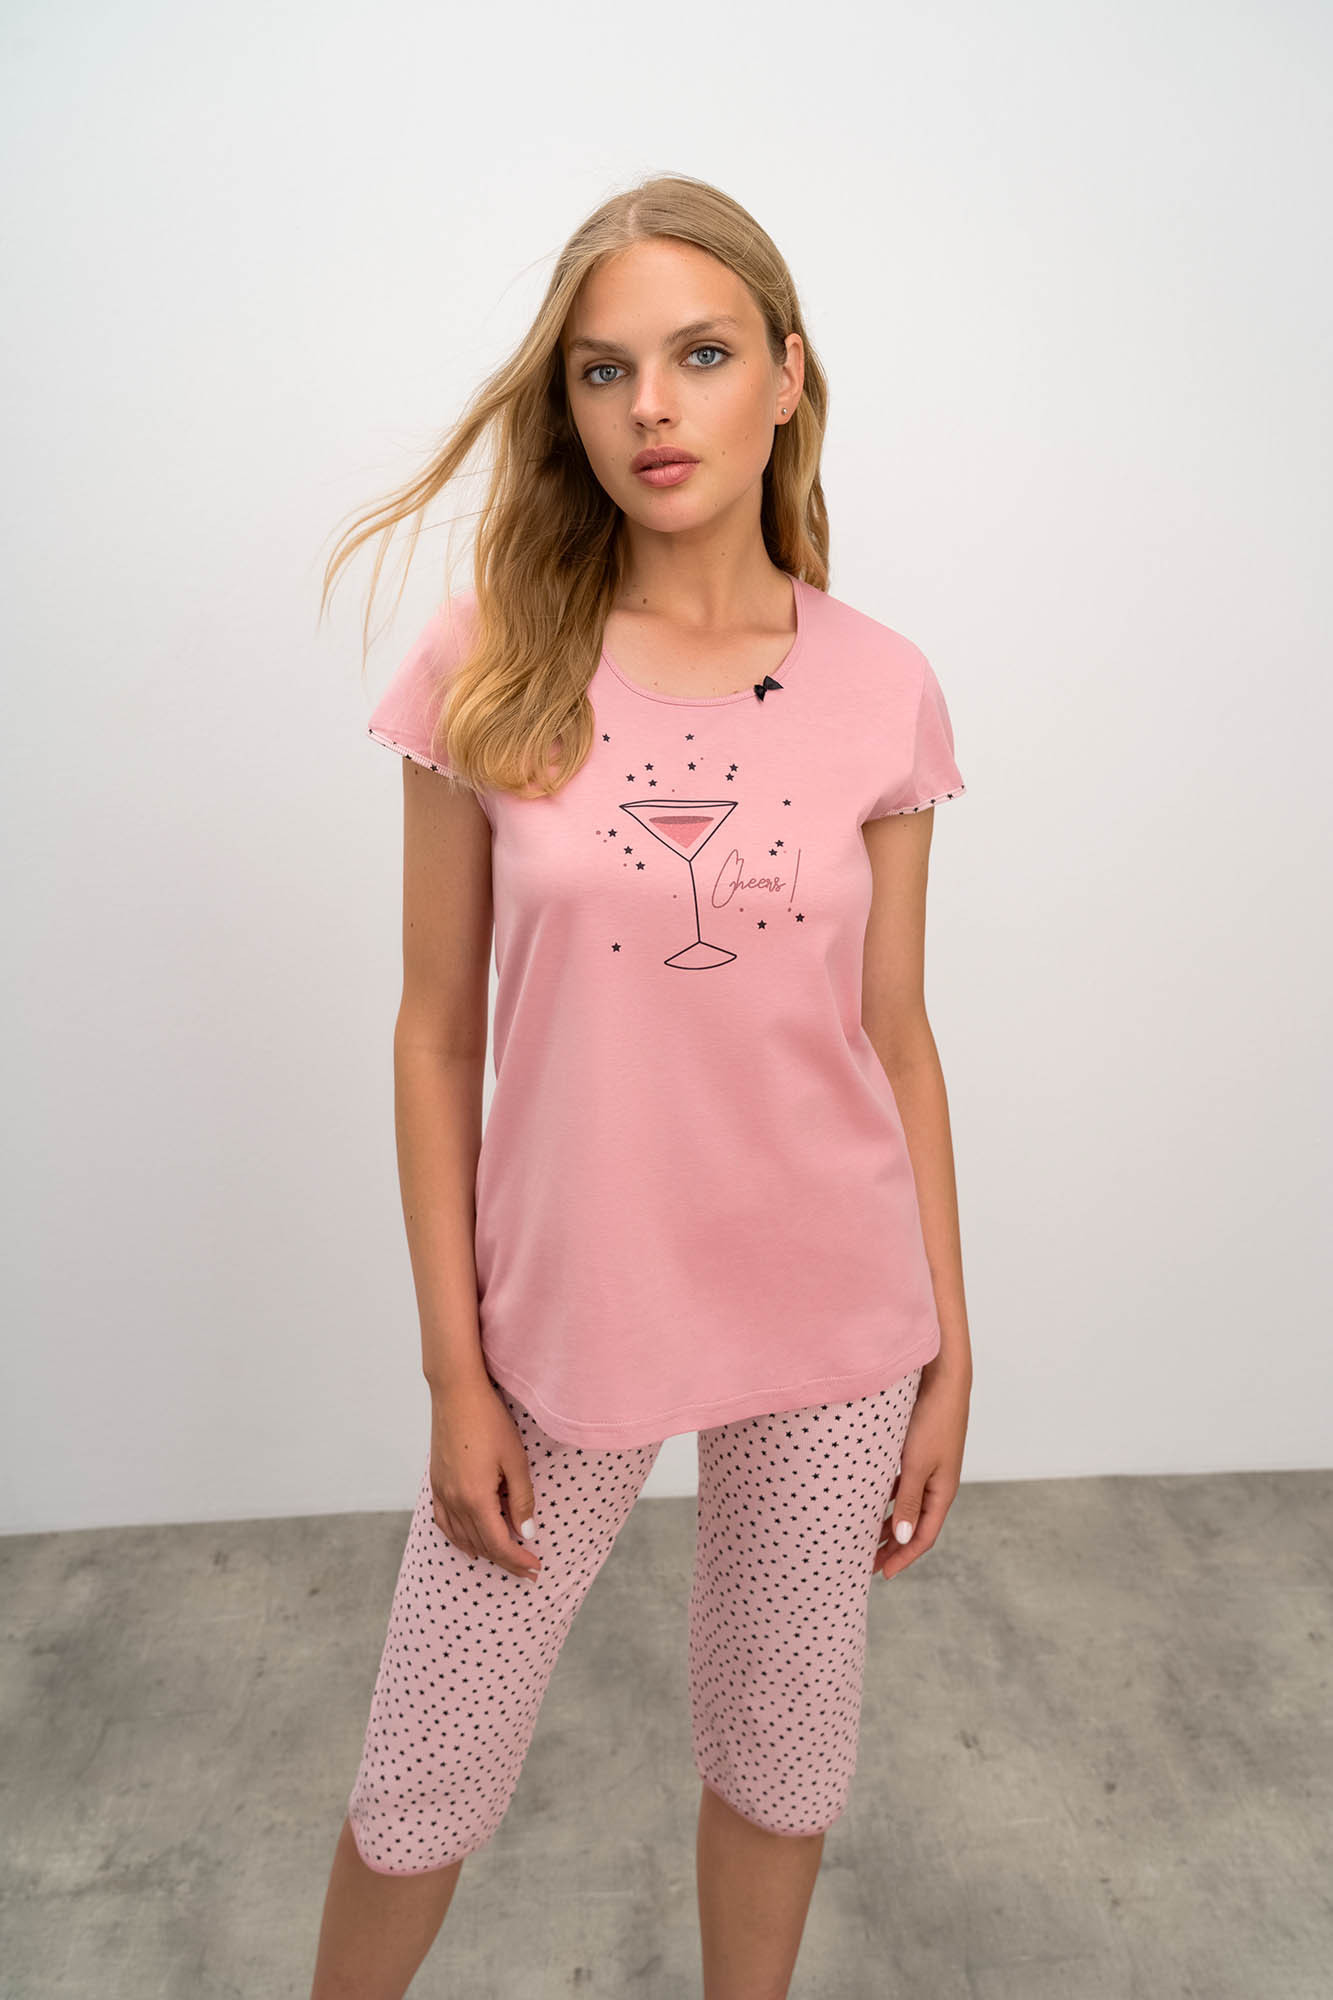 Vamp - Dvoudílné dámské pyžamo 16295 - Vamp Barva: pink gray, Velikost: L